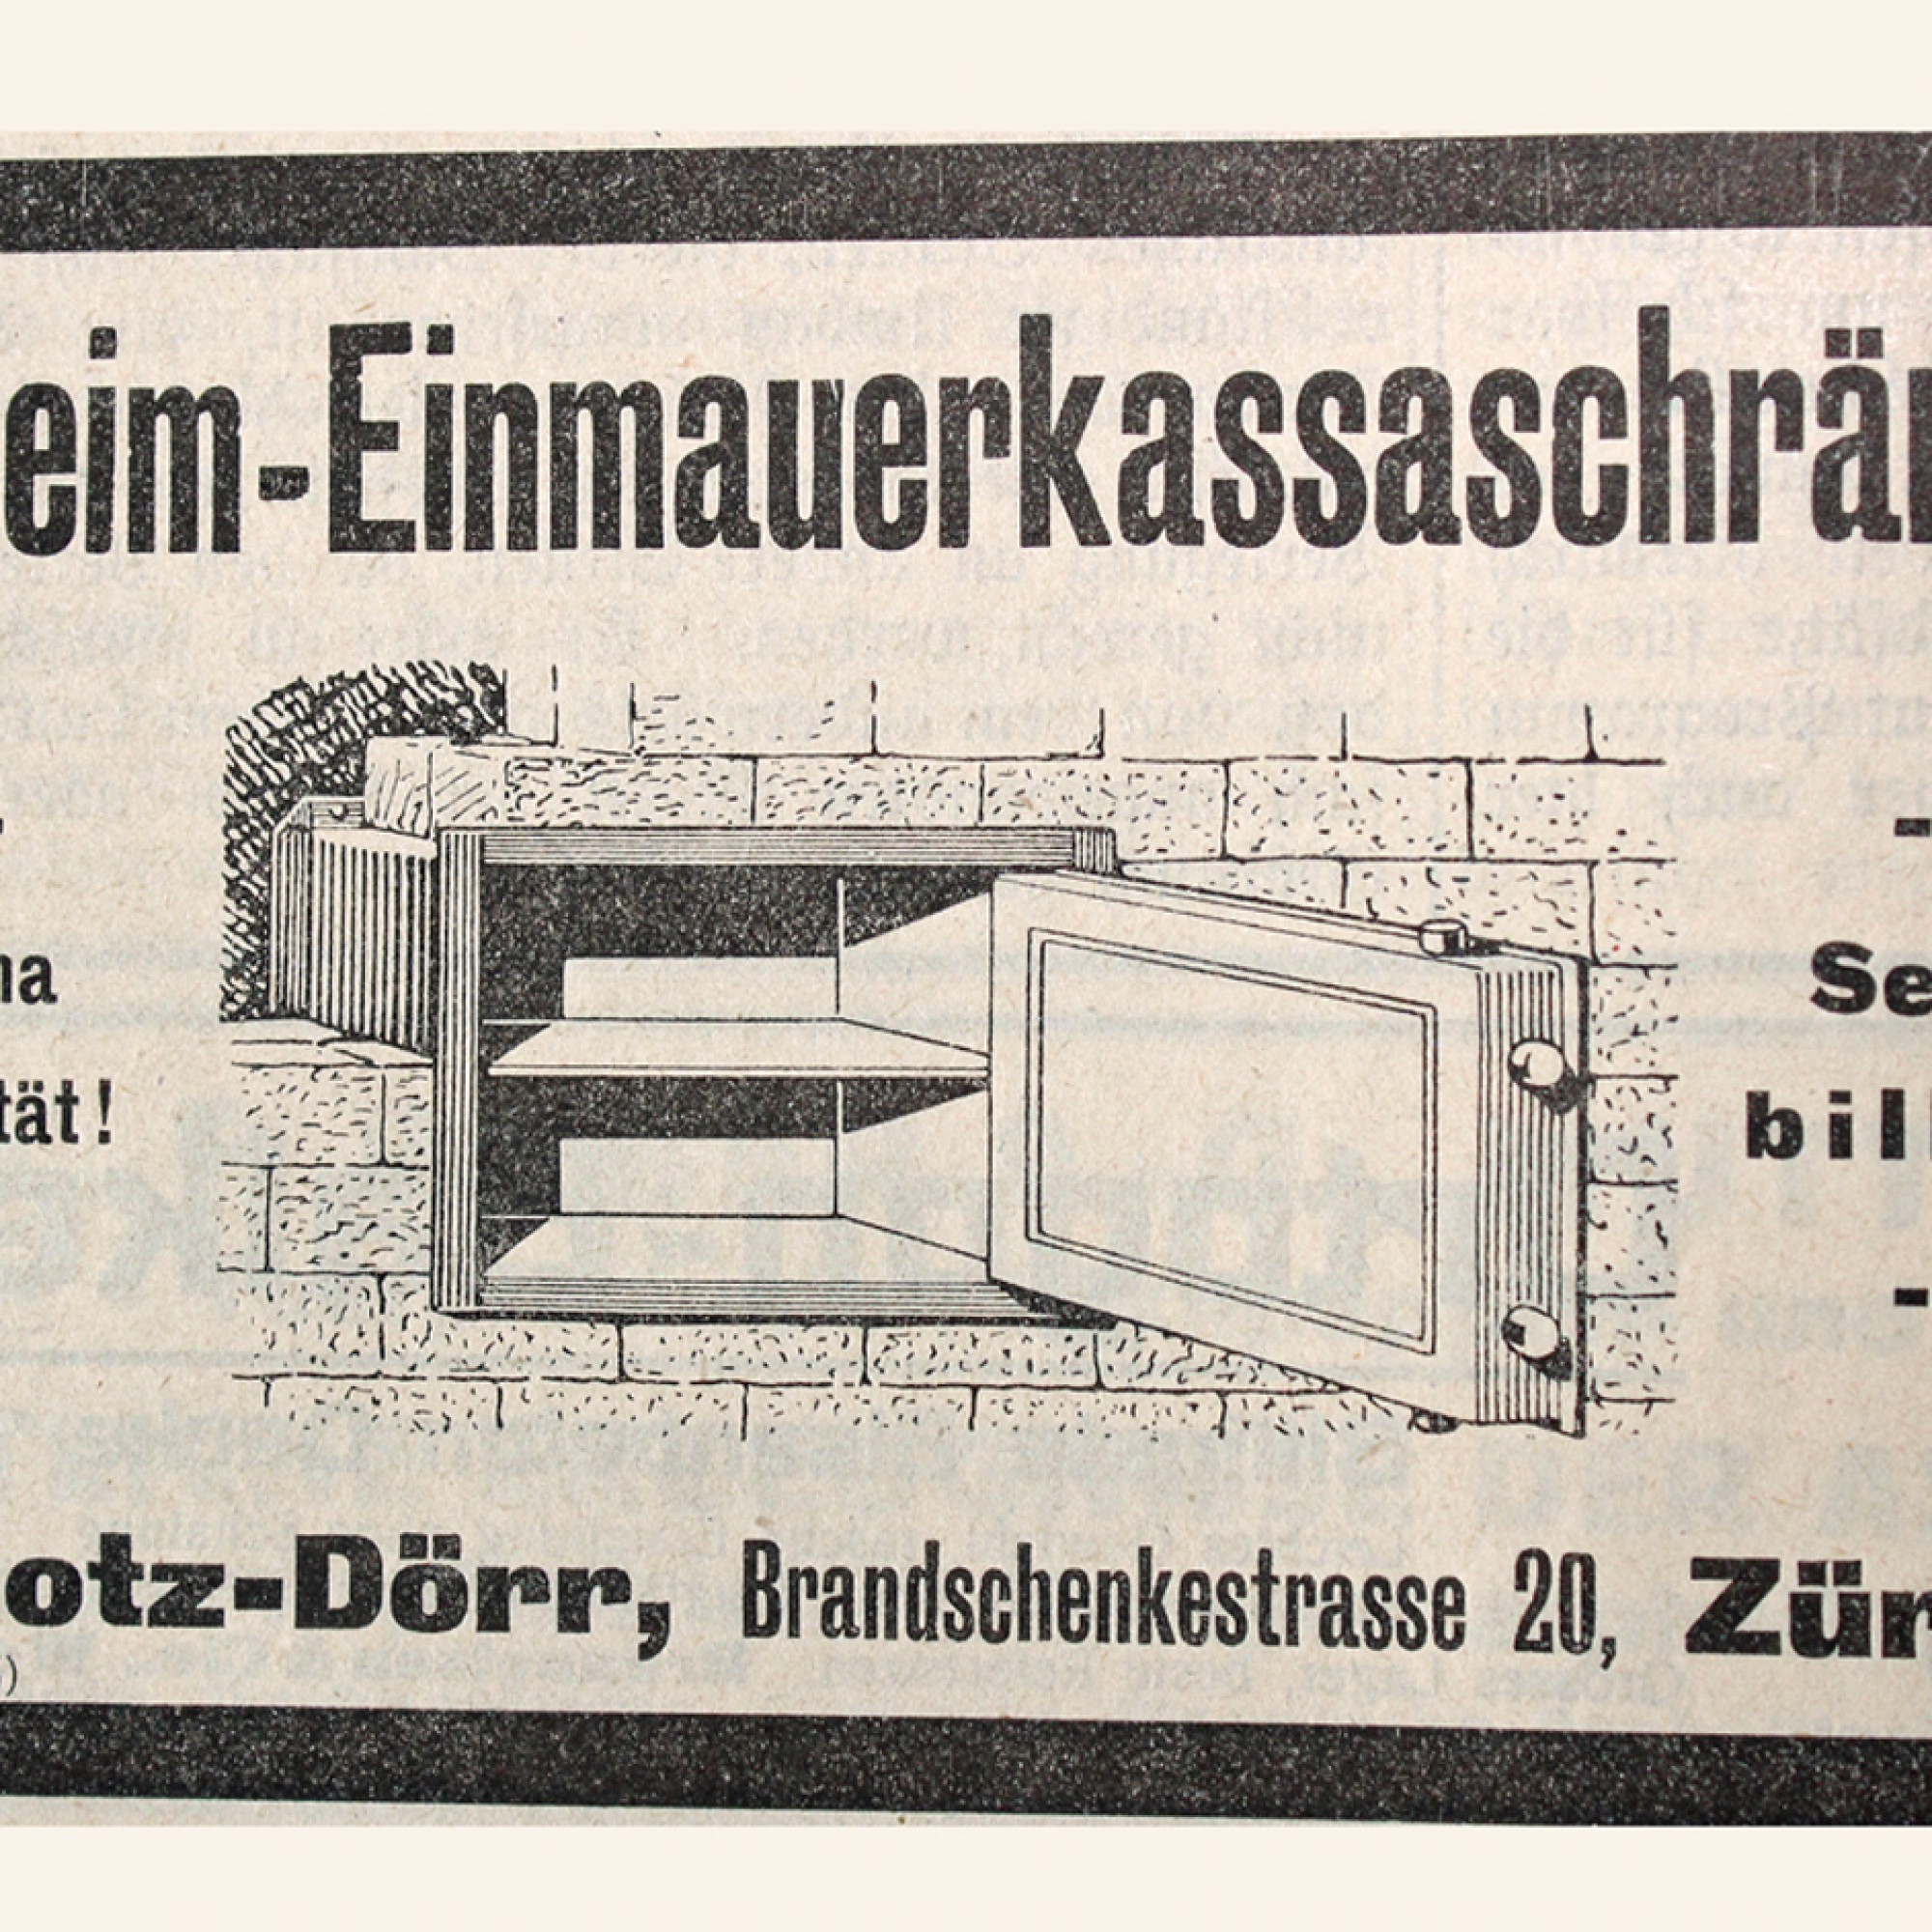 Geheime Einmauerkassaschränke gehörten wohl zum Spezialgebiet von P. Hotz-Dörr.